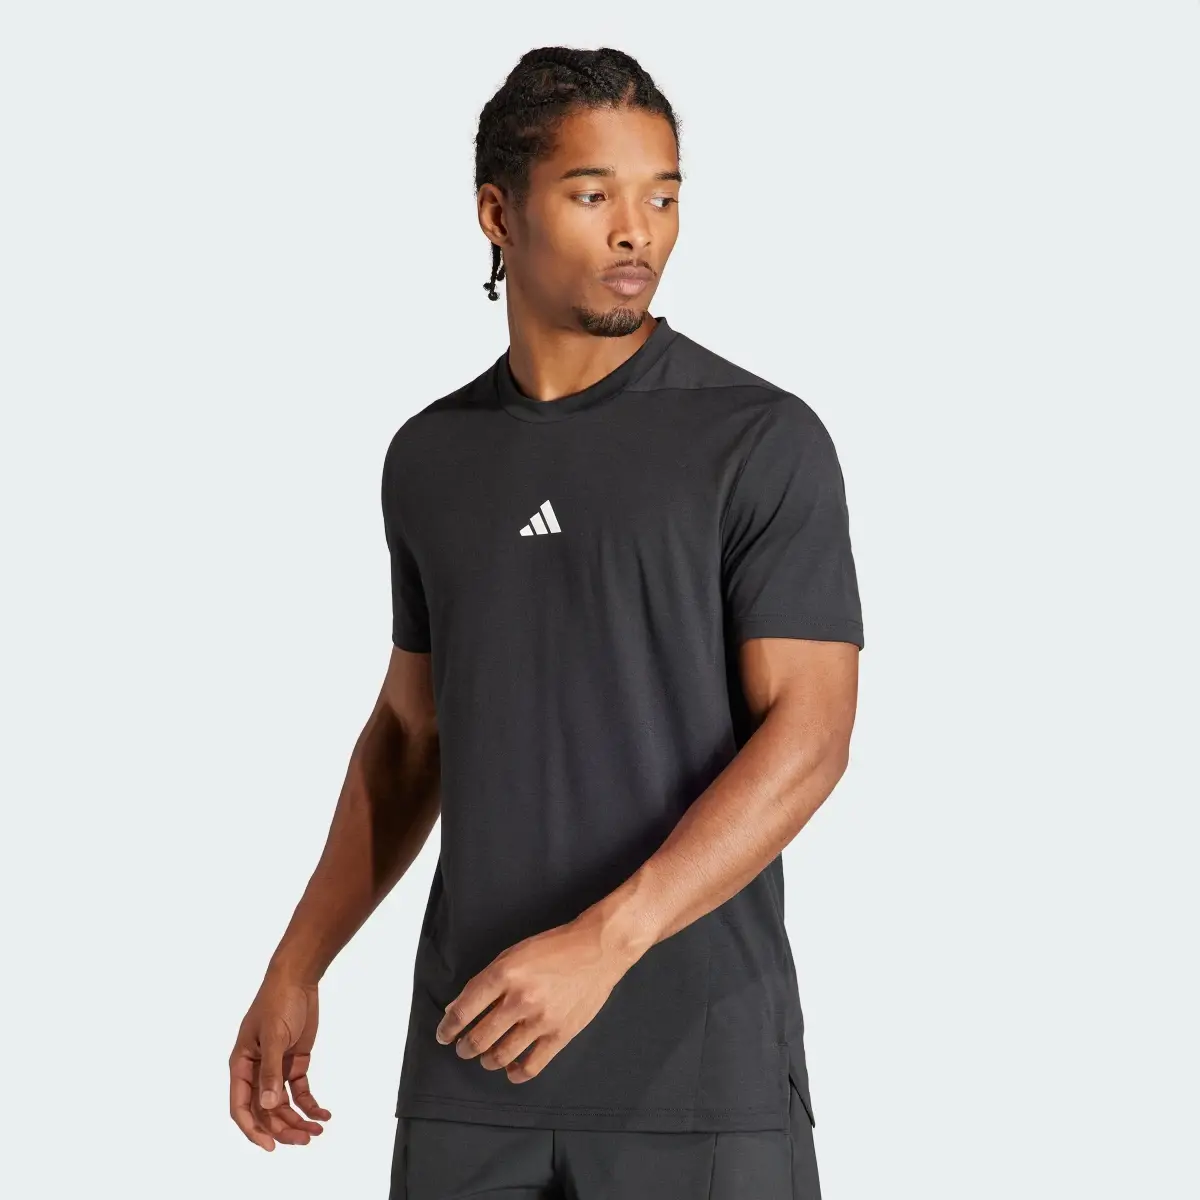 Adidas Designed for Training Antrenman Tişörtü. 2